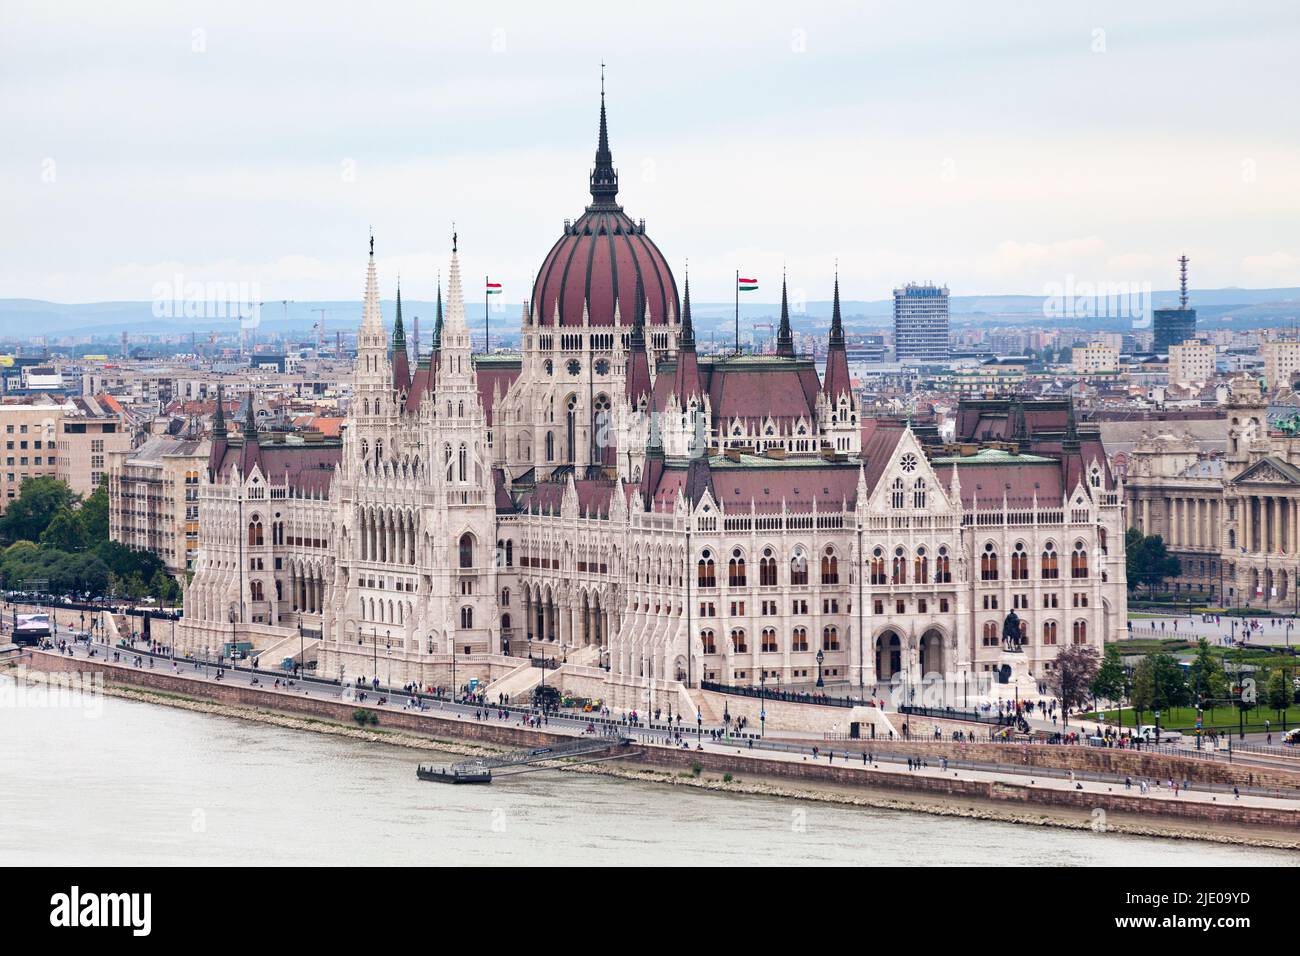 Budapest, Hungría - Junio 20 2018: Vista aérea del edificio del Parlamento húngaro a lo largo del río Danubio. Foto de stock